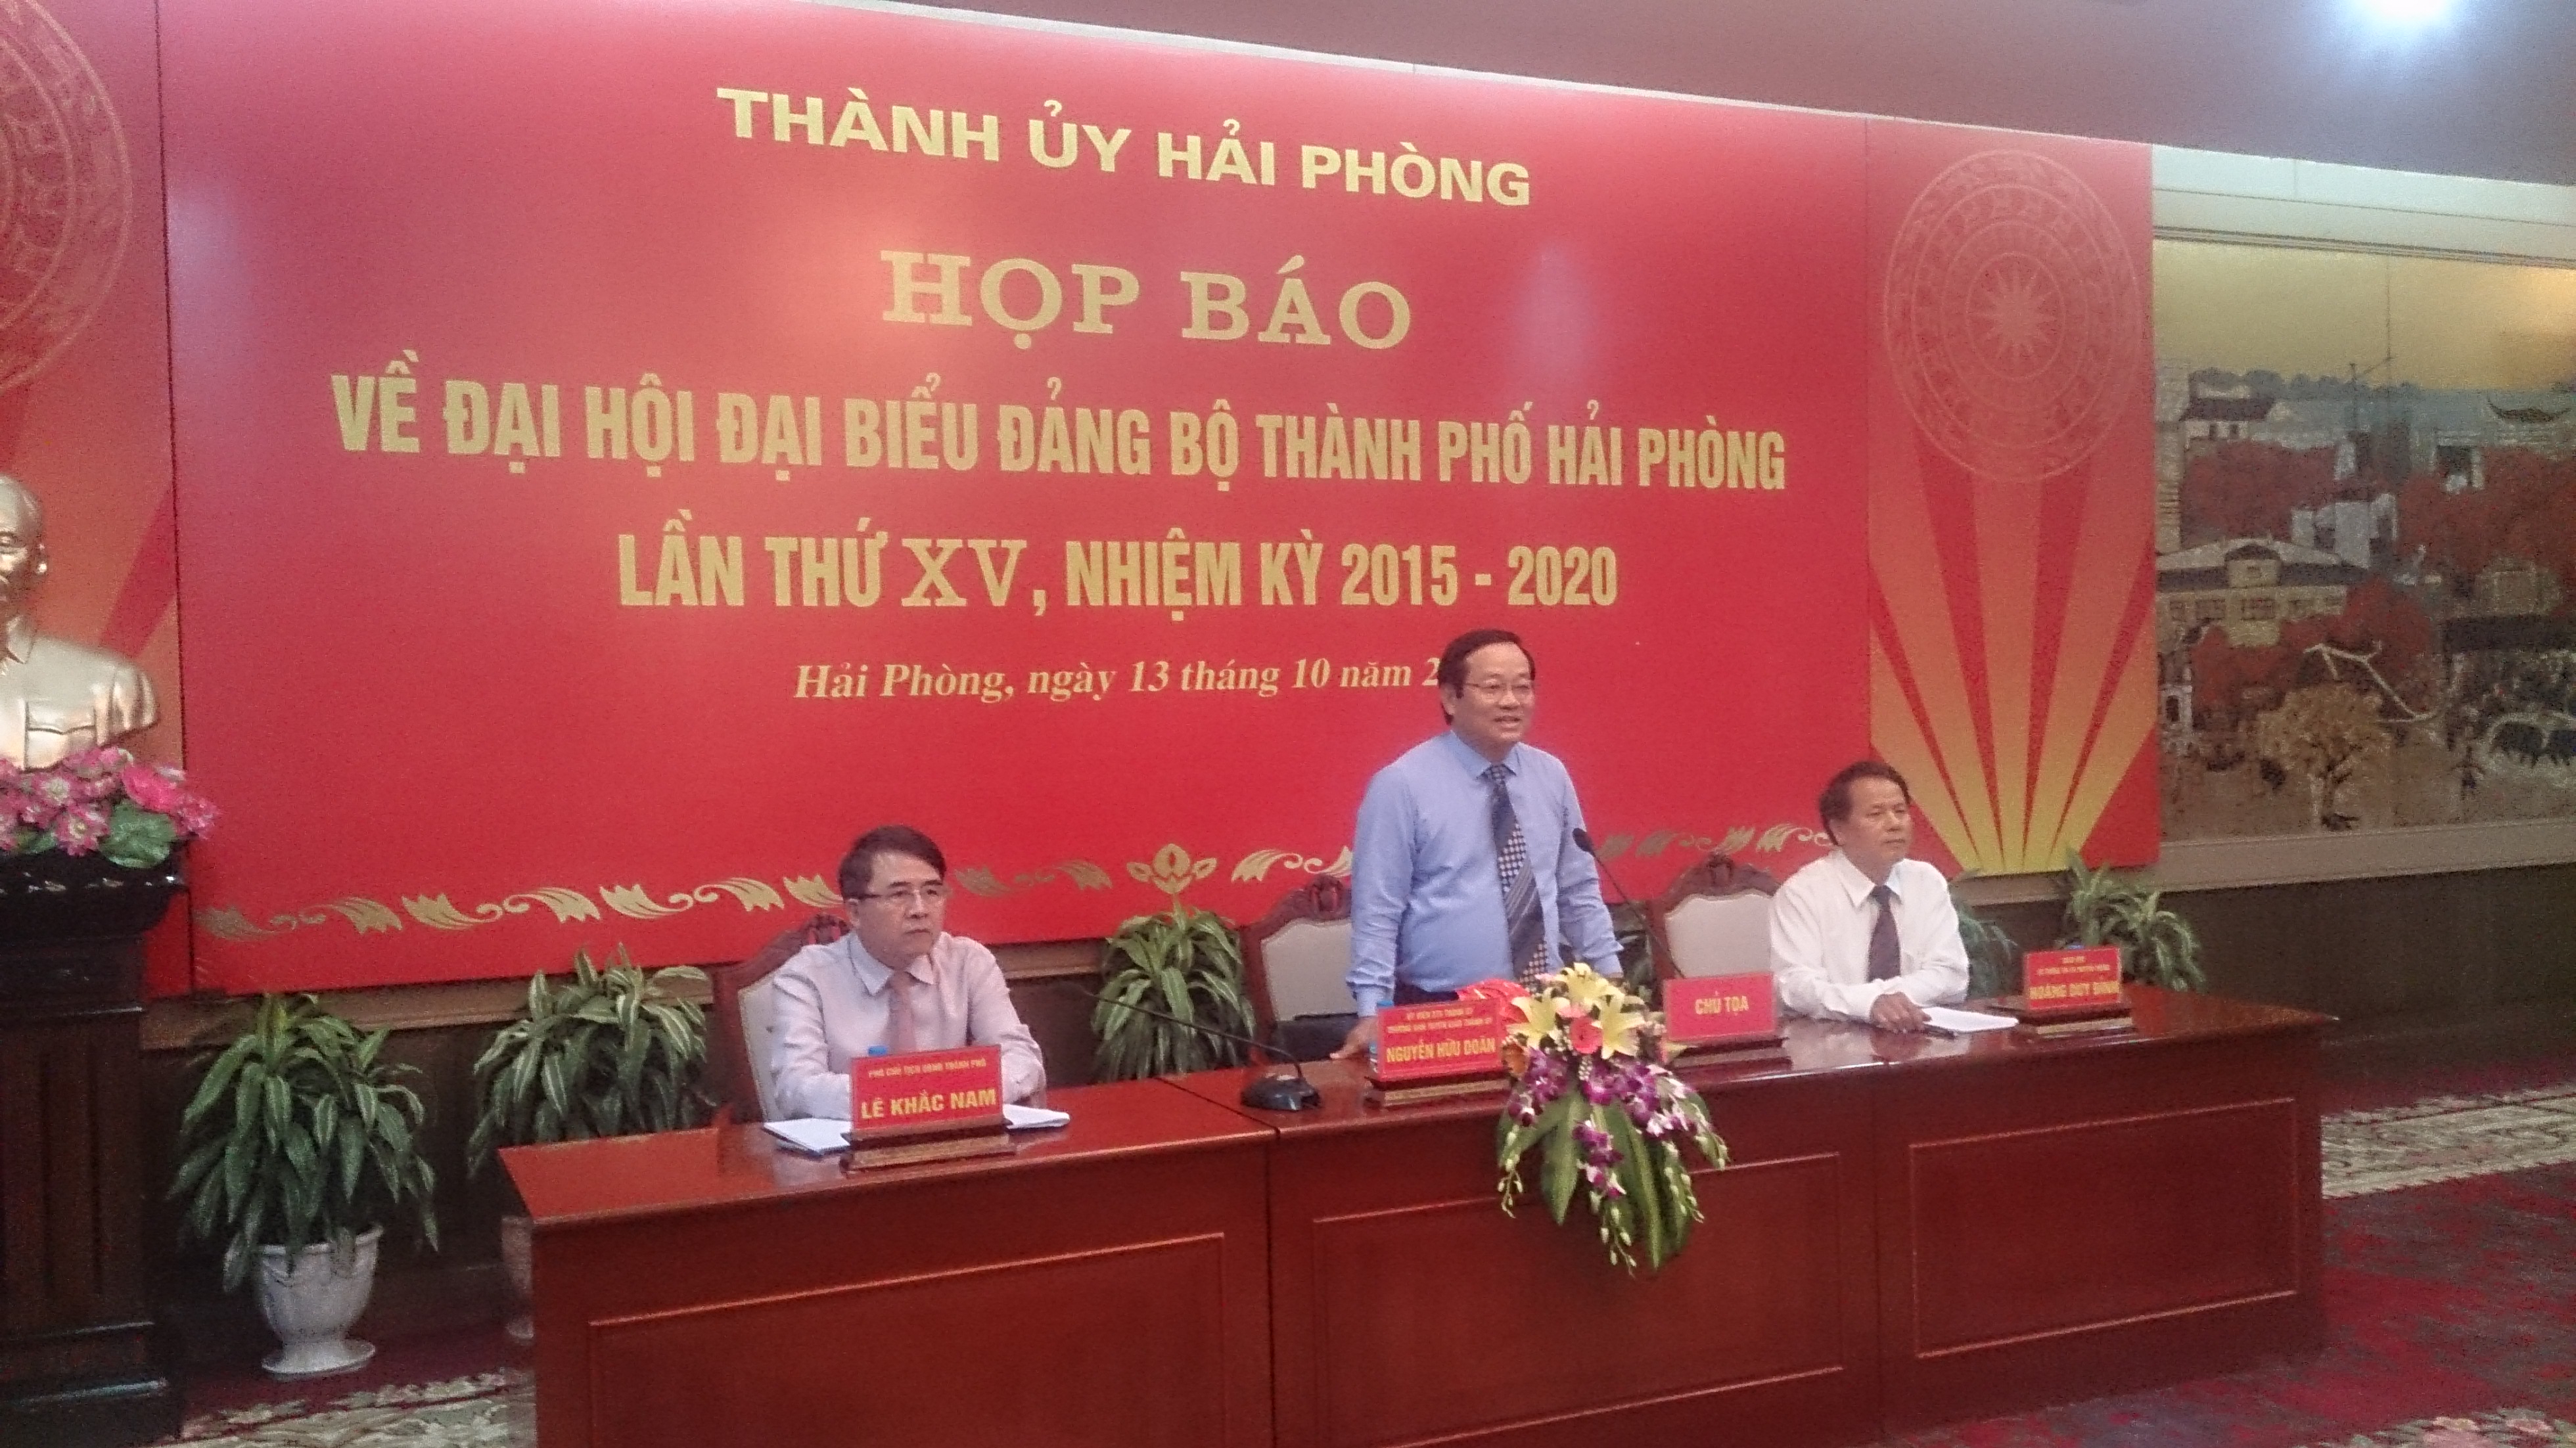 ng Nguyễn Hữu Doãn phát biểu tại buổi họp báo